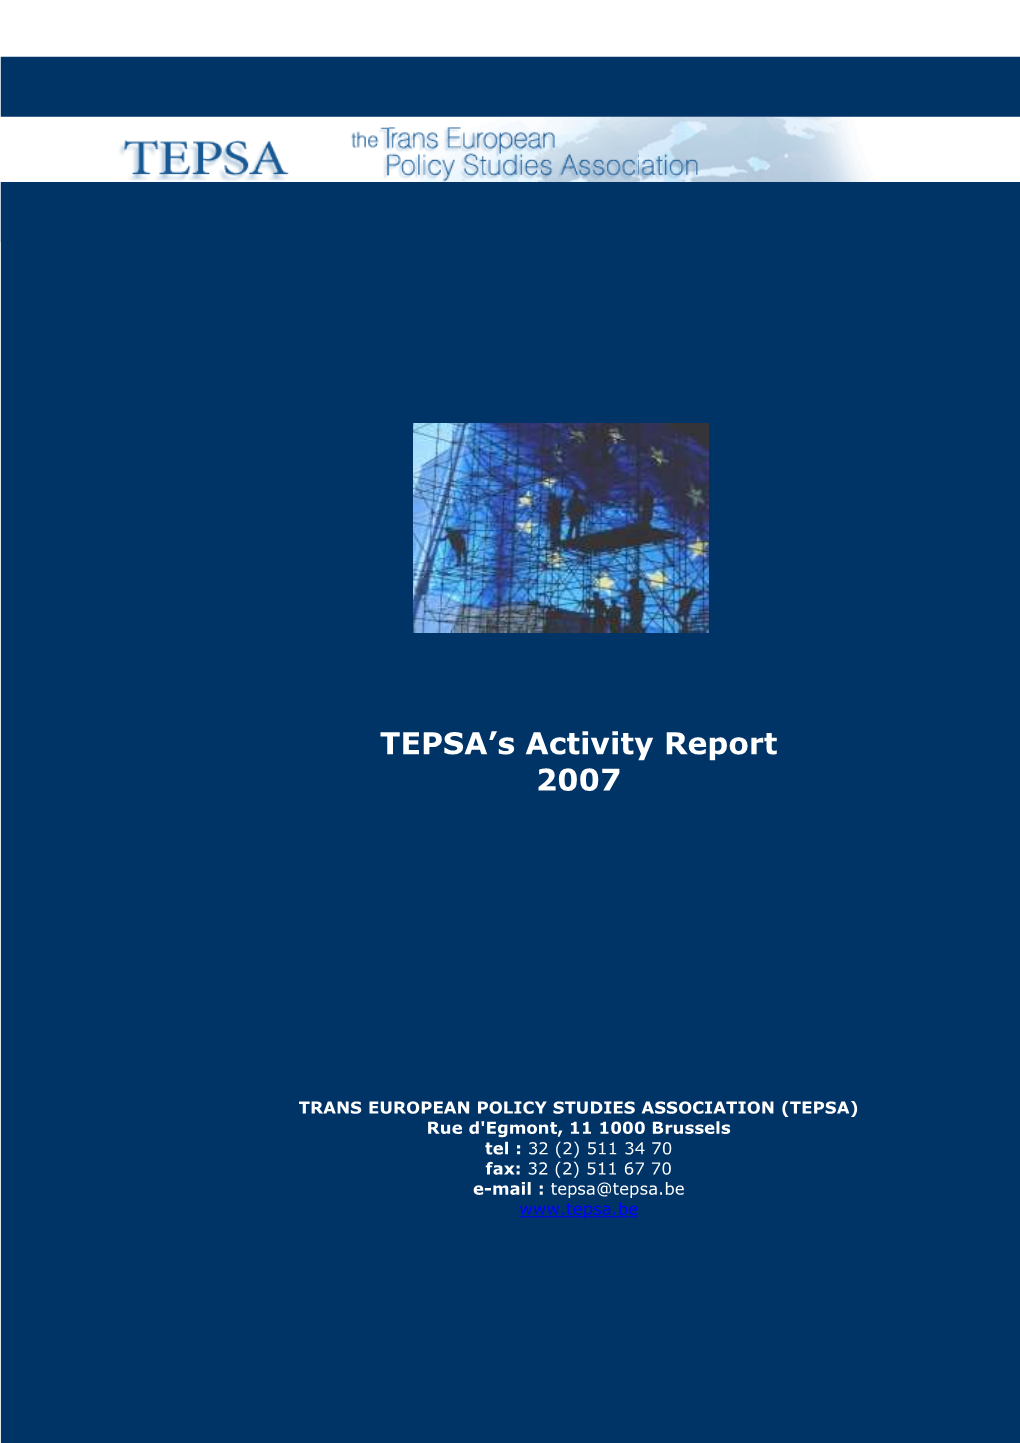 Activity Report 2007 New